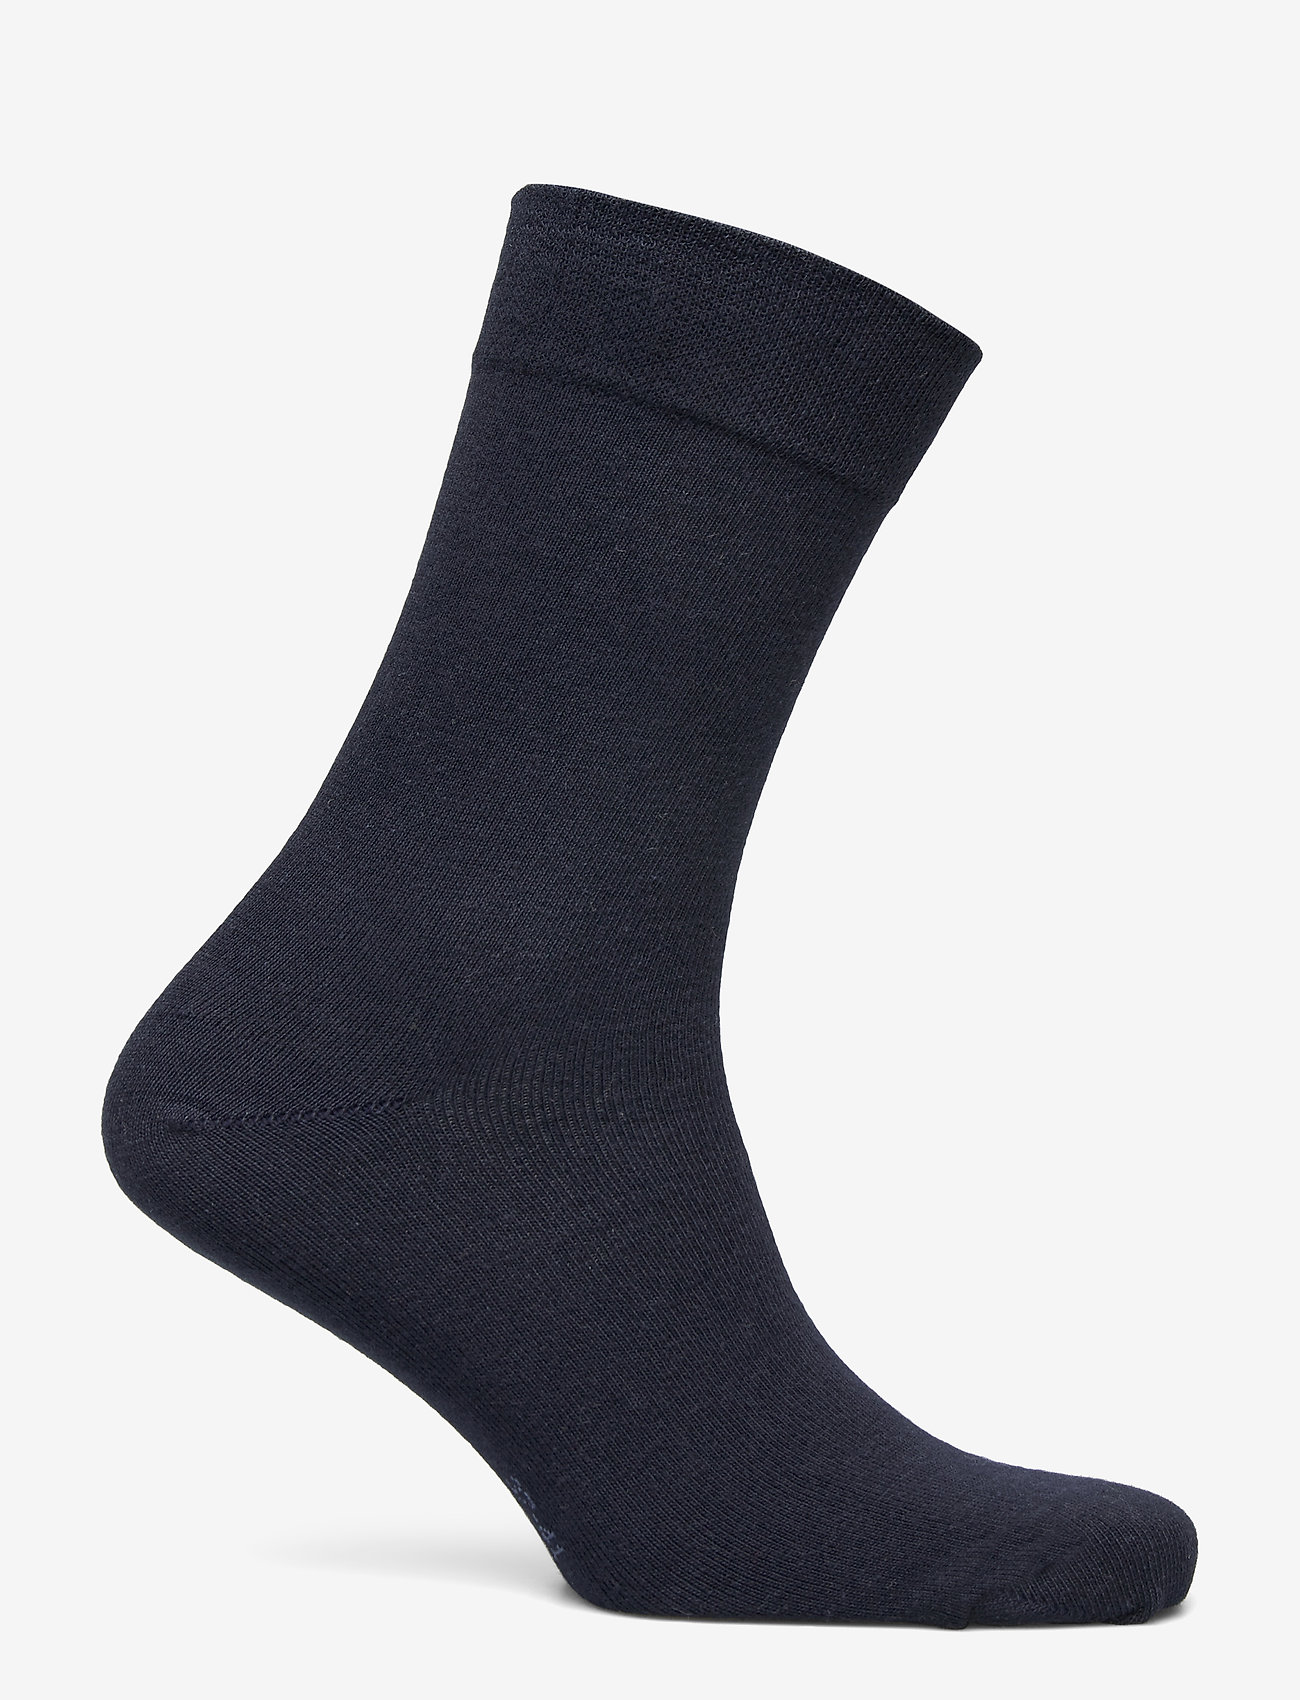 Decoy - DECOY comfort ankle socks - crew sokken - navy - 1